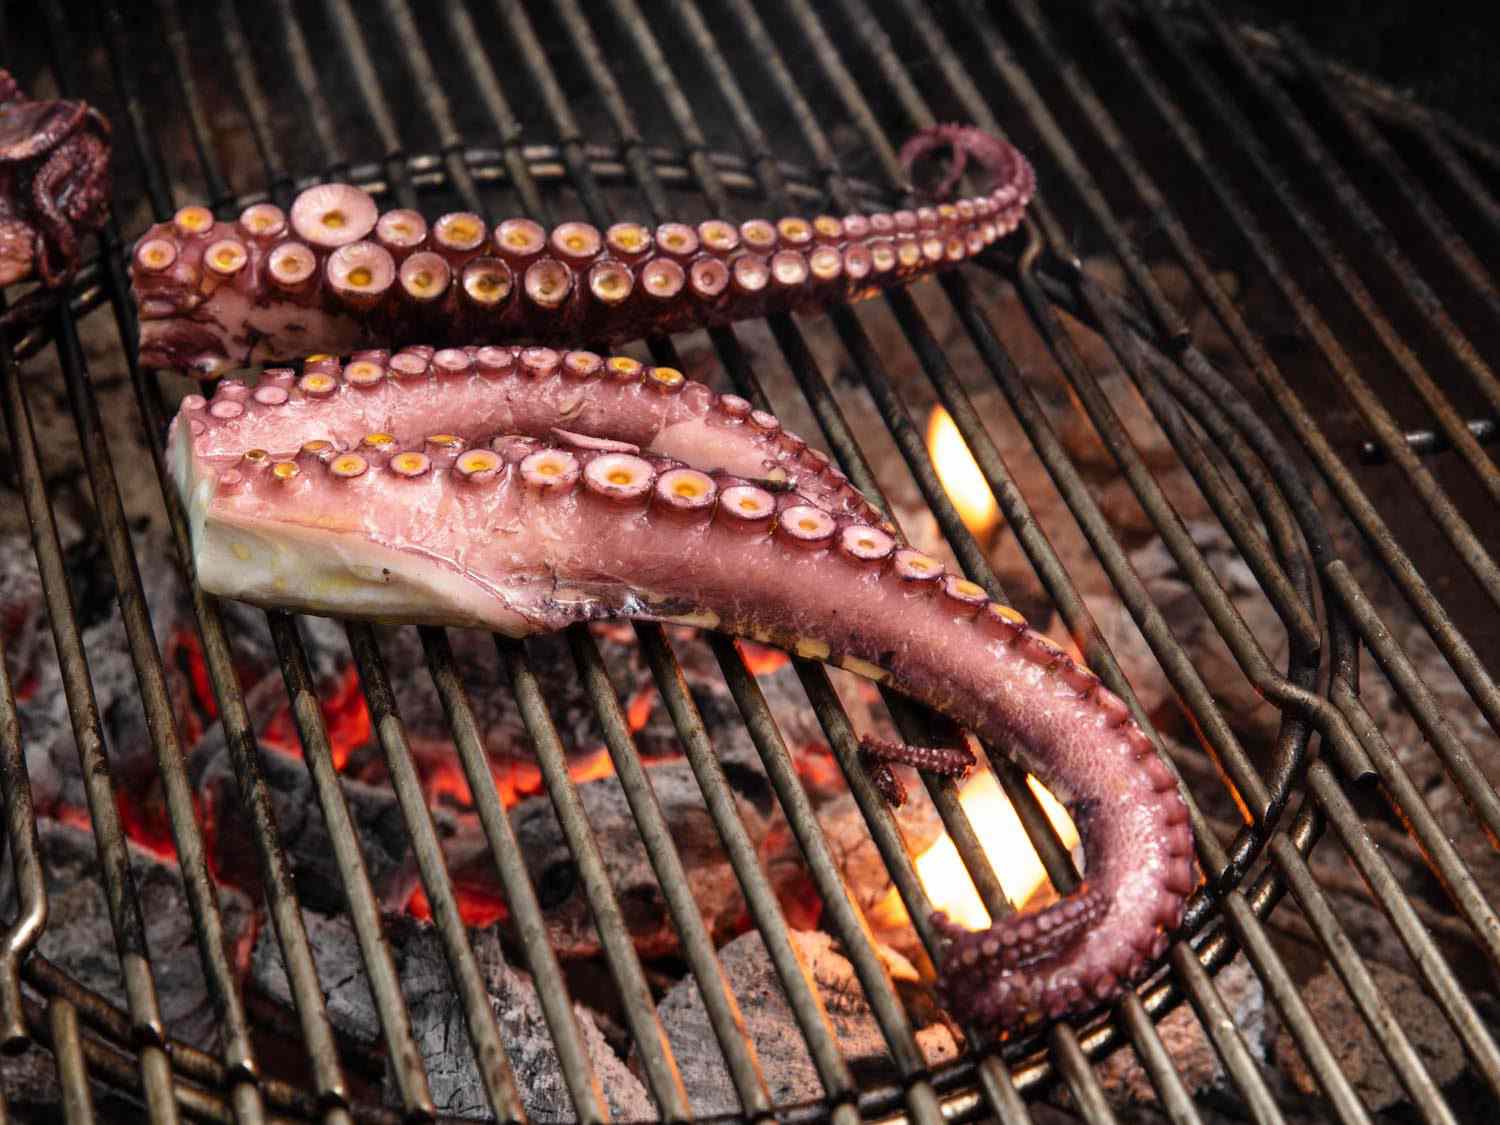 刚刚放在烤架上的章鱼触须，下面是发光的木炭